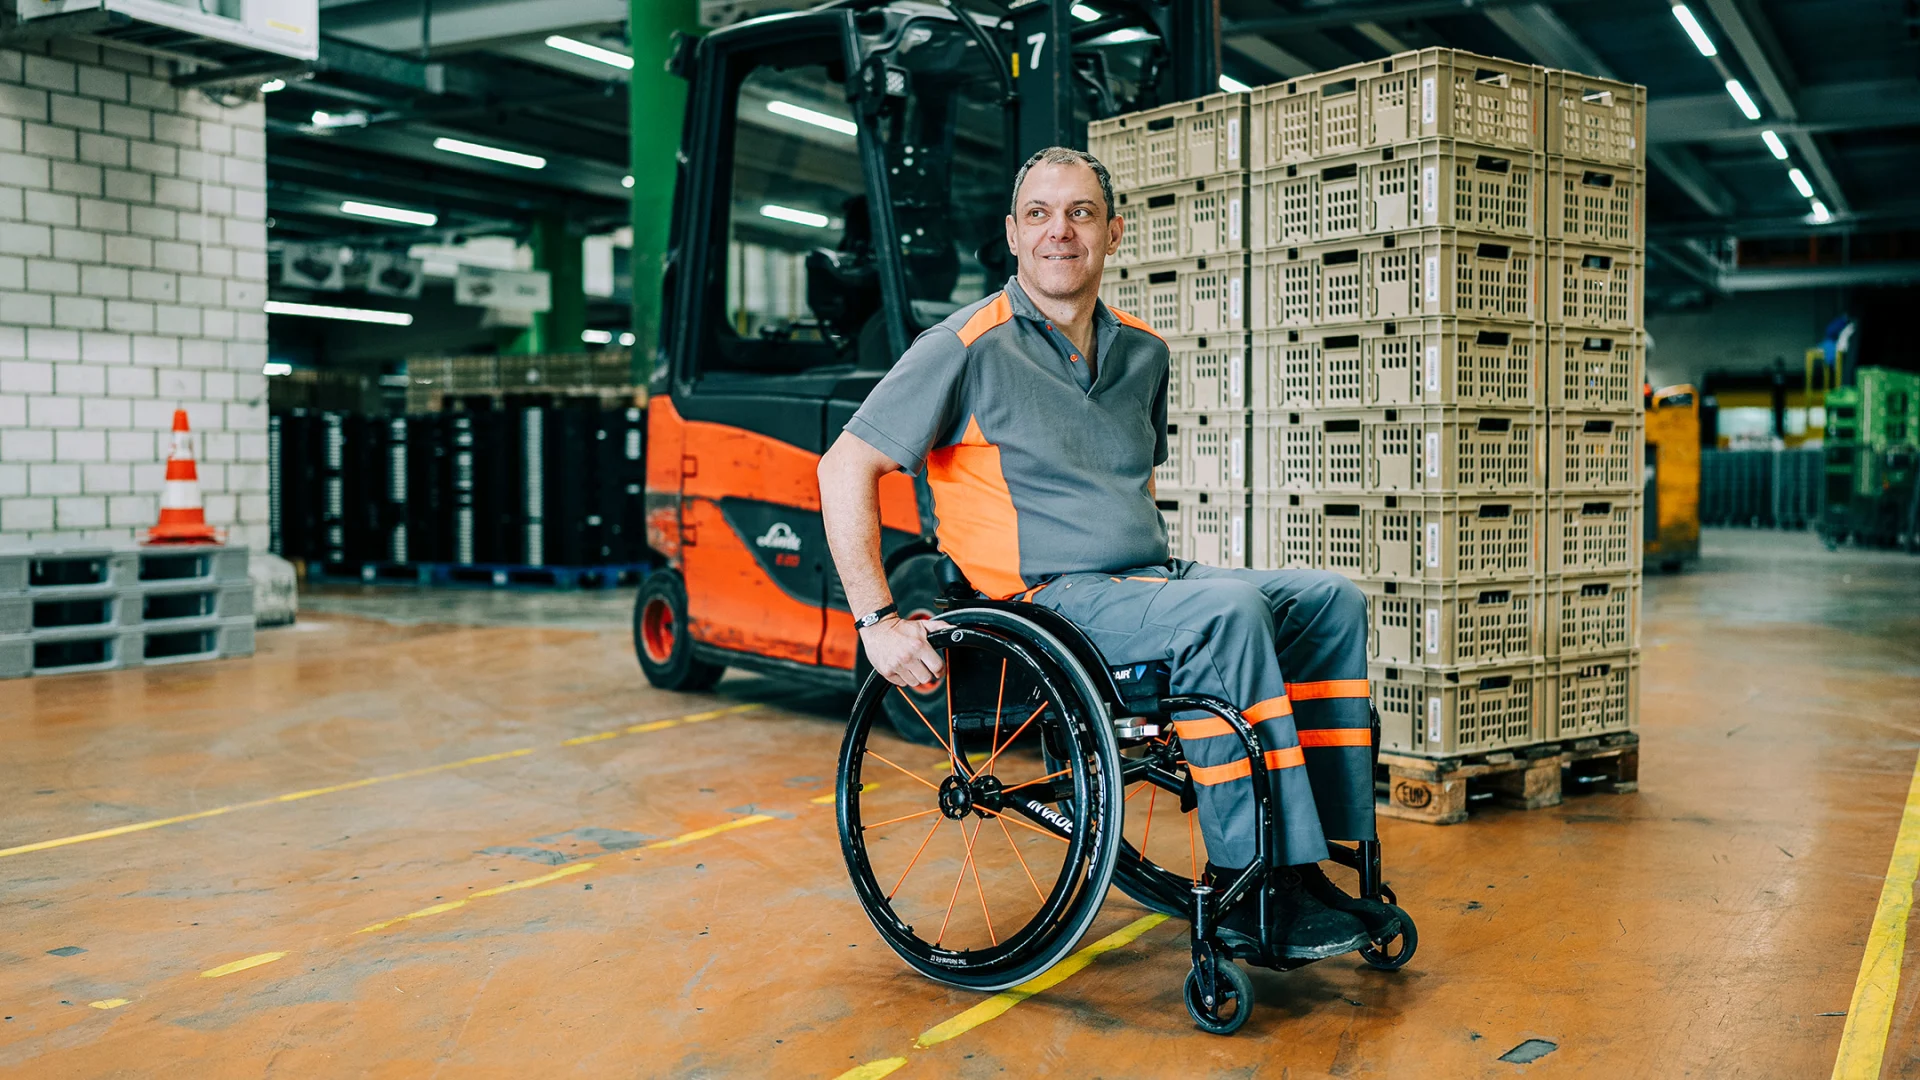 René Hübner in his wheelchair at work